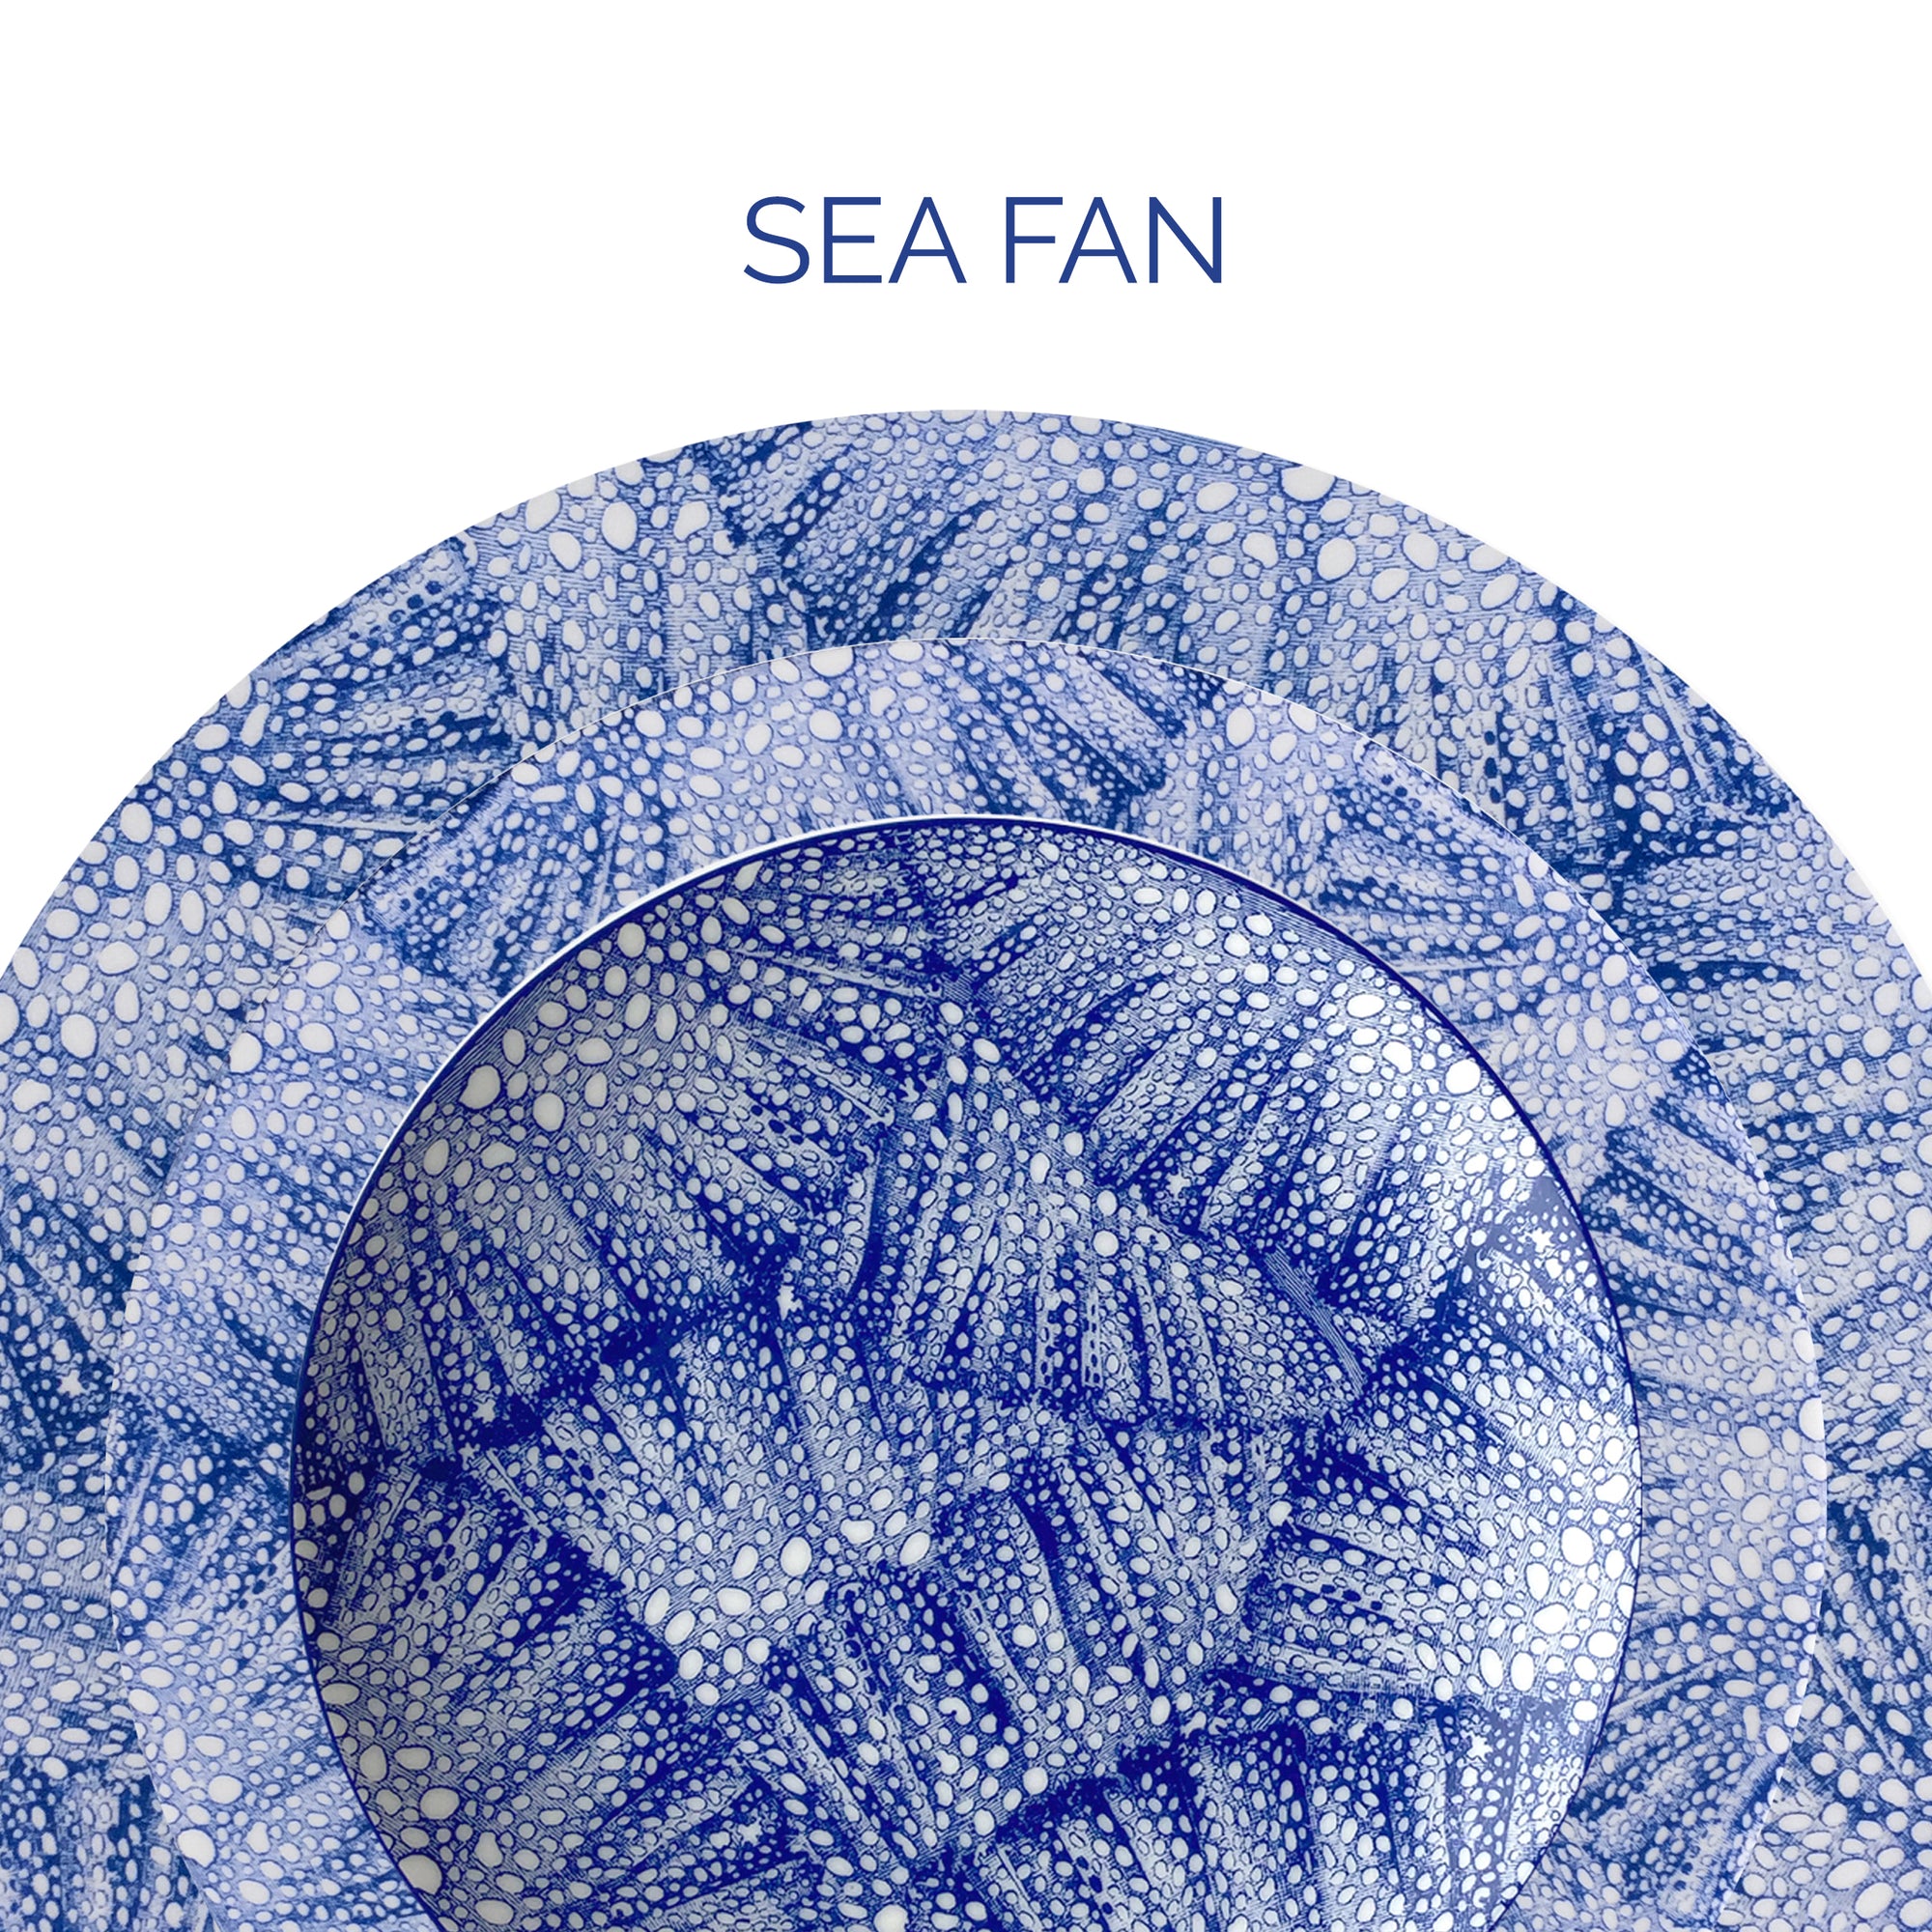 Sea Fan